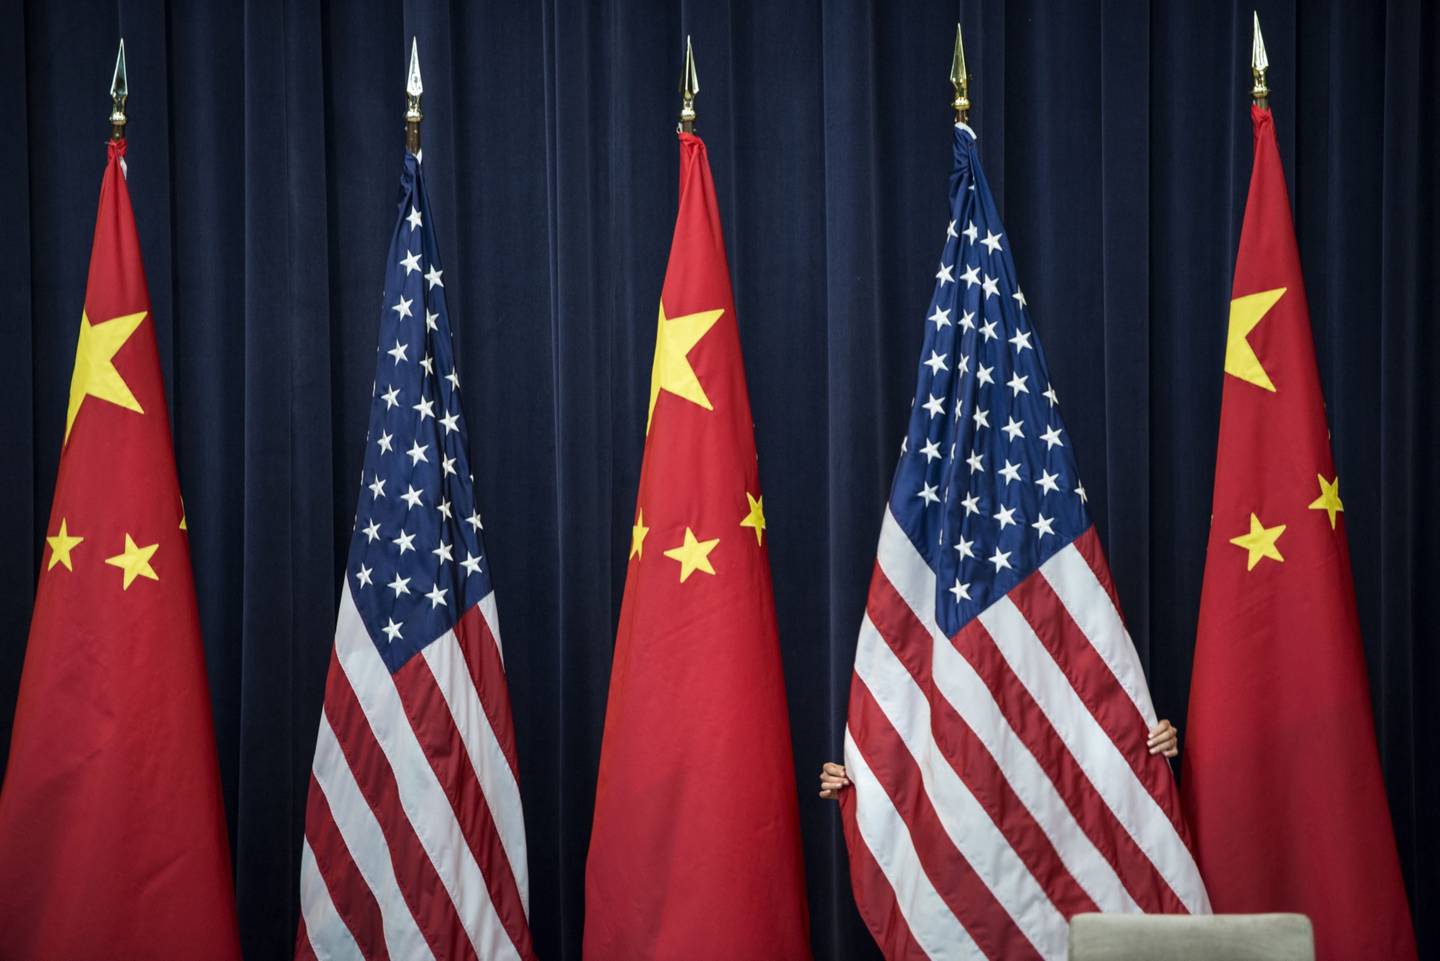 Imagen de banderas de Estados Unidos y China